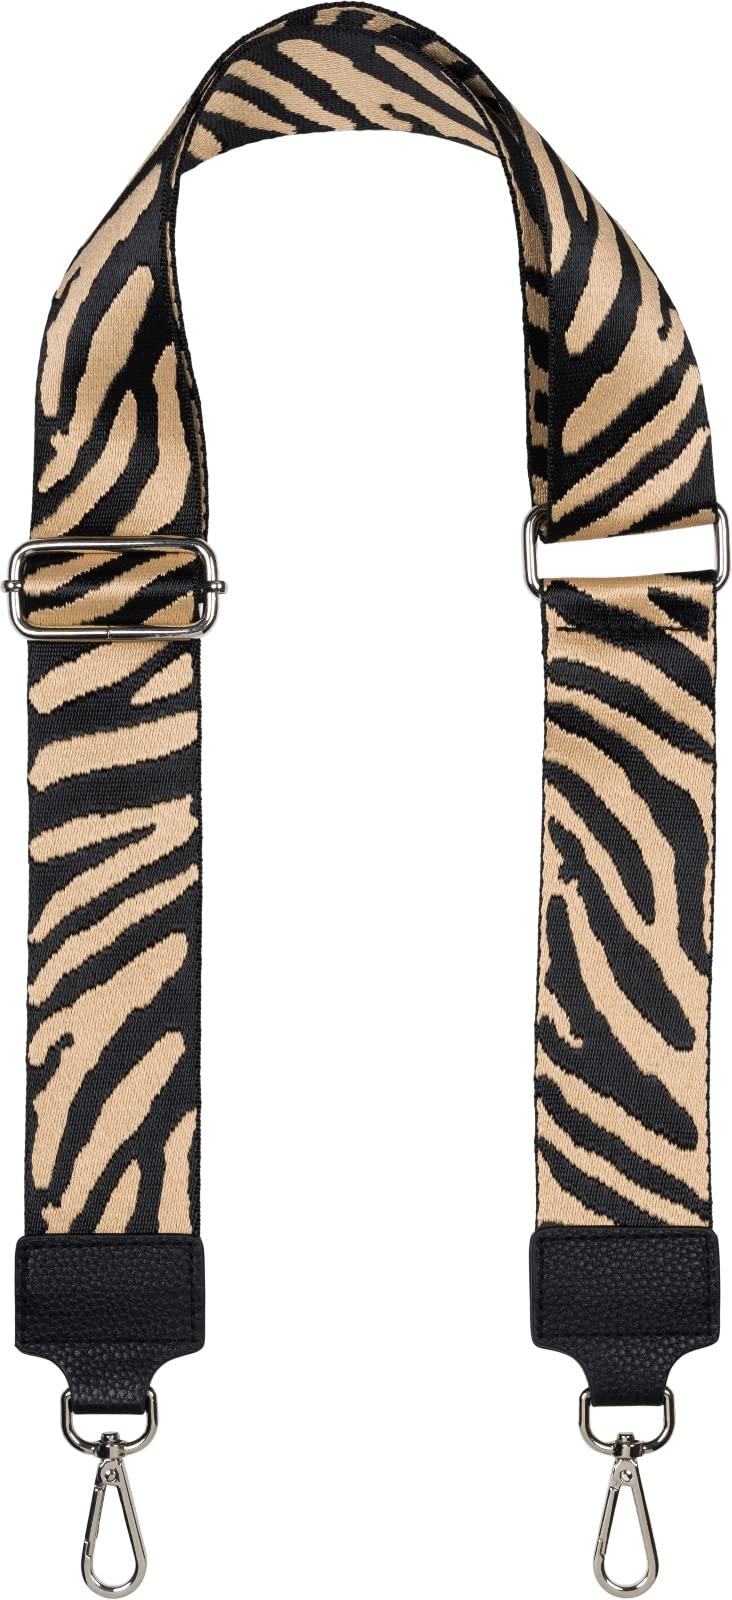 styleBREAKER Breiter Taschen Schulterriemen verstellbar mit Zebra Muster, Wechsel Taschengurt, Handyband, Handykette 02013033, Farbe:Hellbraun-Schwarz von styleBREAKER